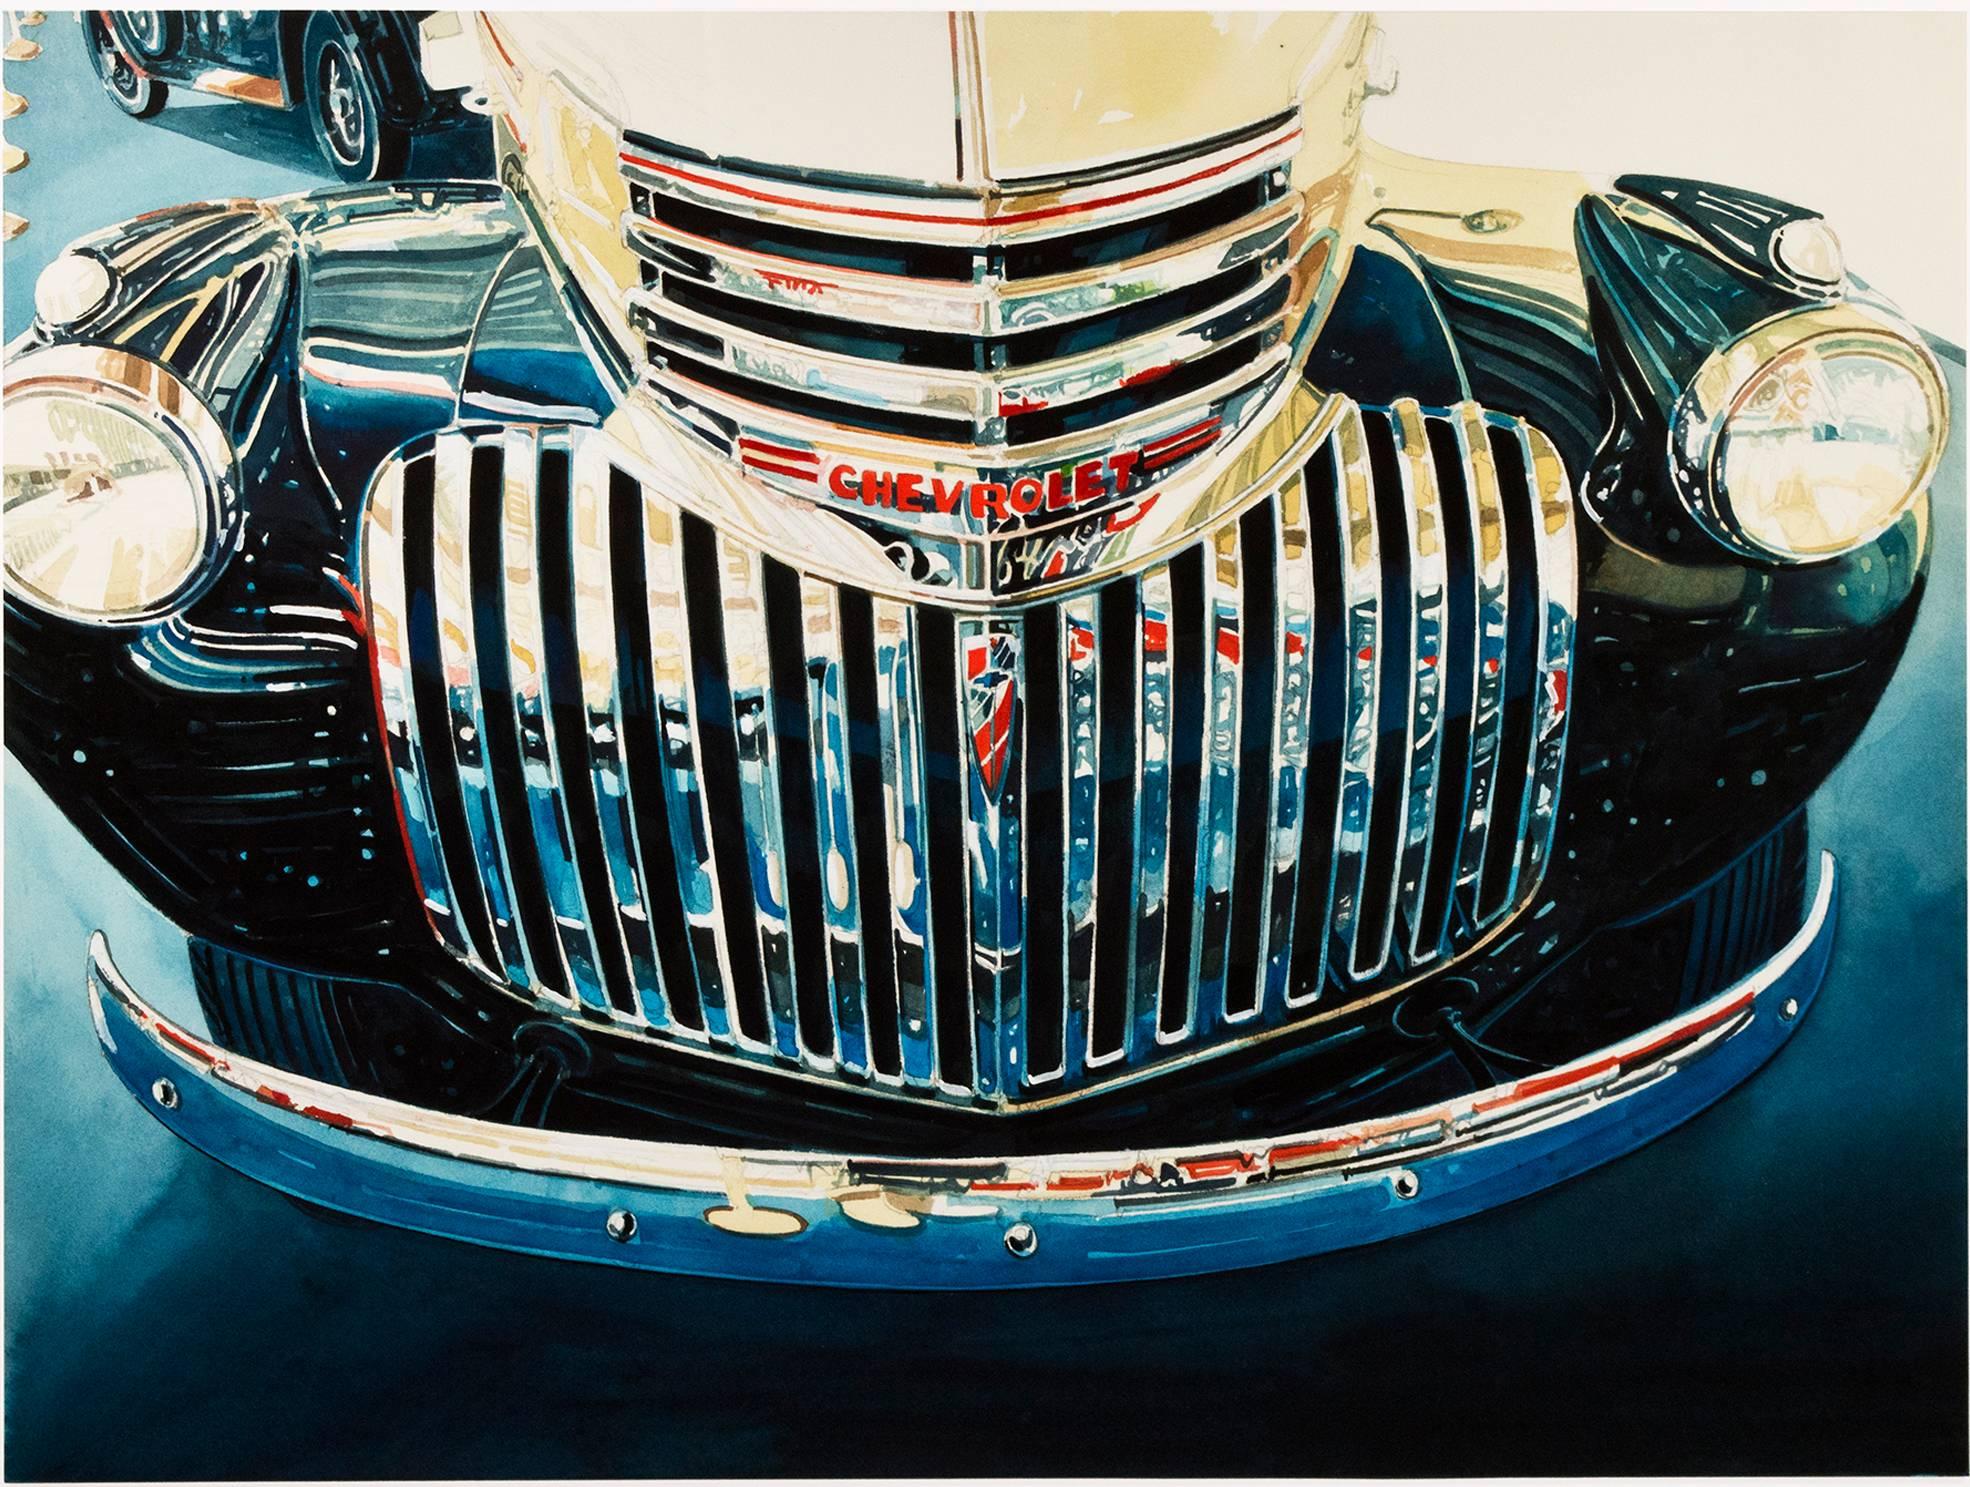 "Chevrolet Kühlergrill" ist ein original signiertes Aquarell von Bruce McCombs. Es stellt den Kühlergrill eines hochglanzpolierten Chevrolet-Autos dar. Dieses Gemälde zeigt McCombs' exquisite Aufmerksamkeit für Licht, Reflexion und Details. 

29